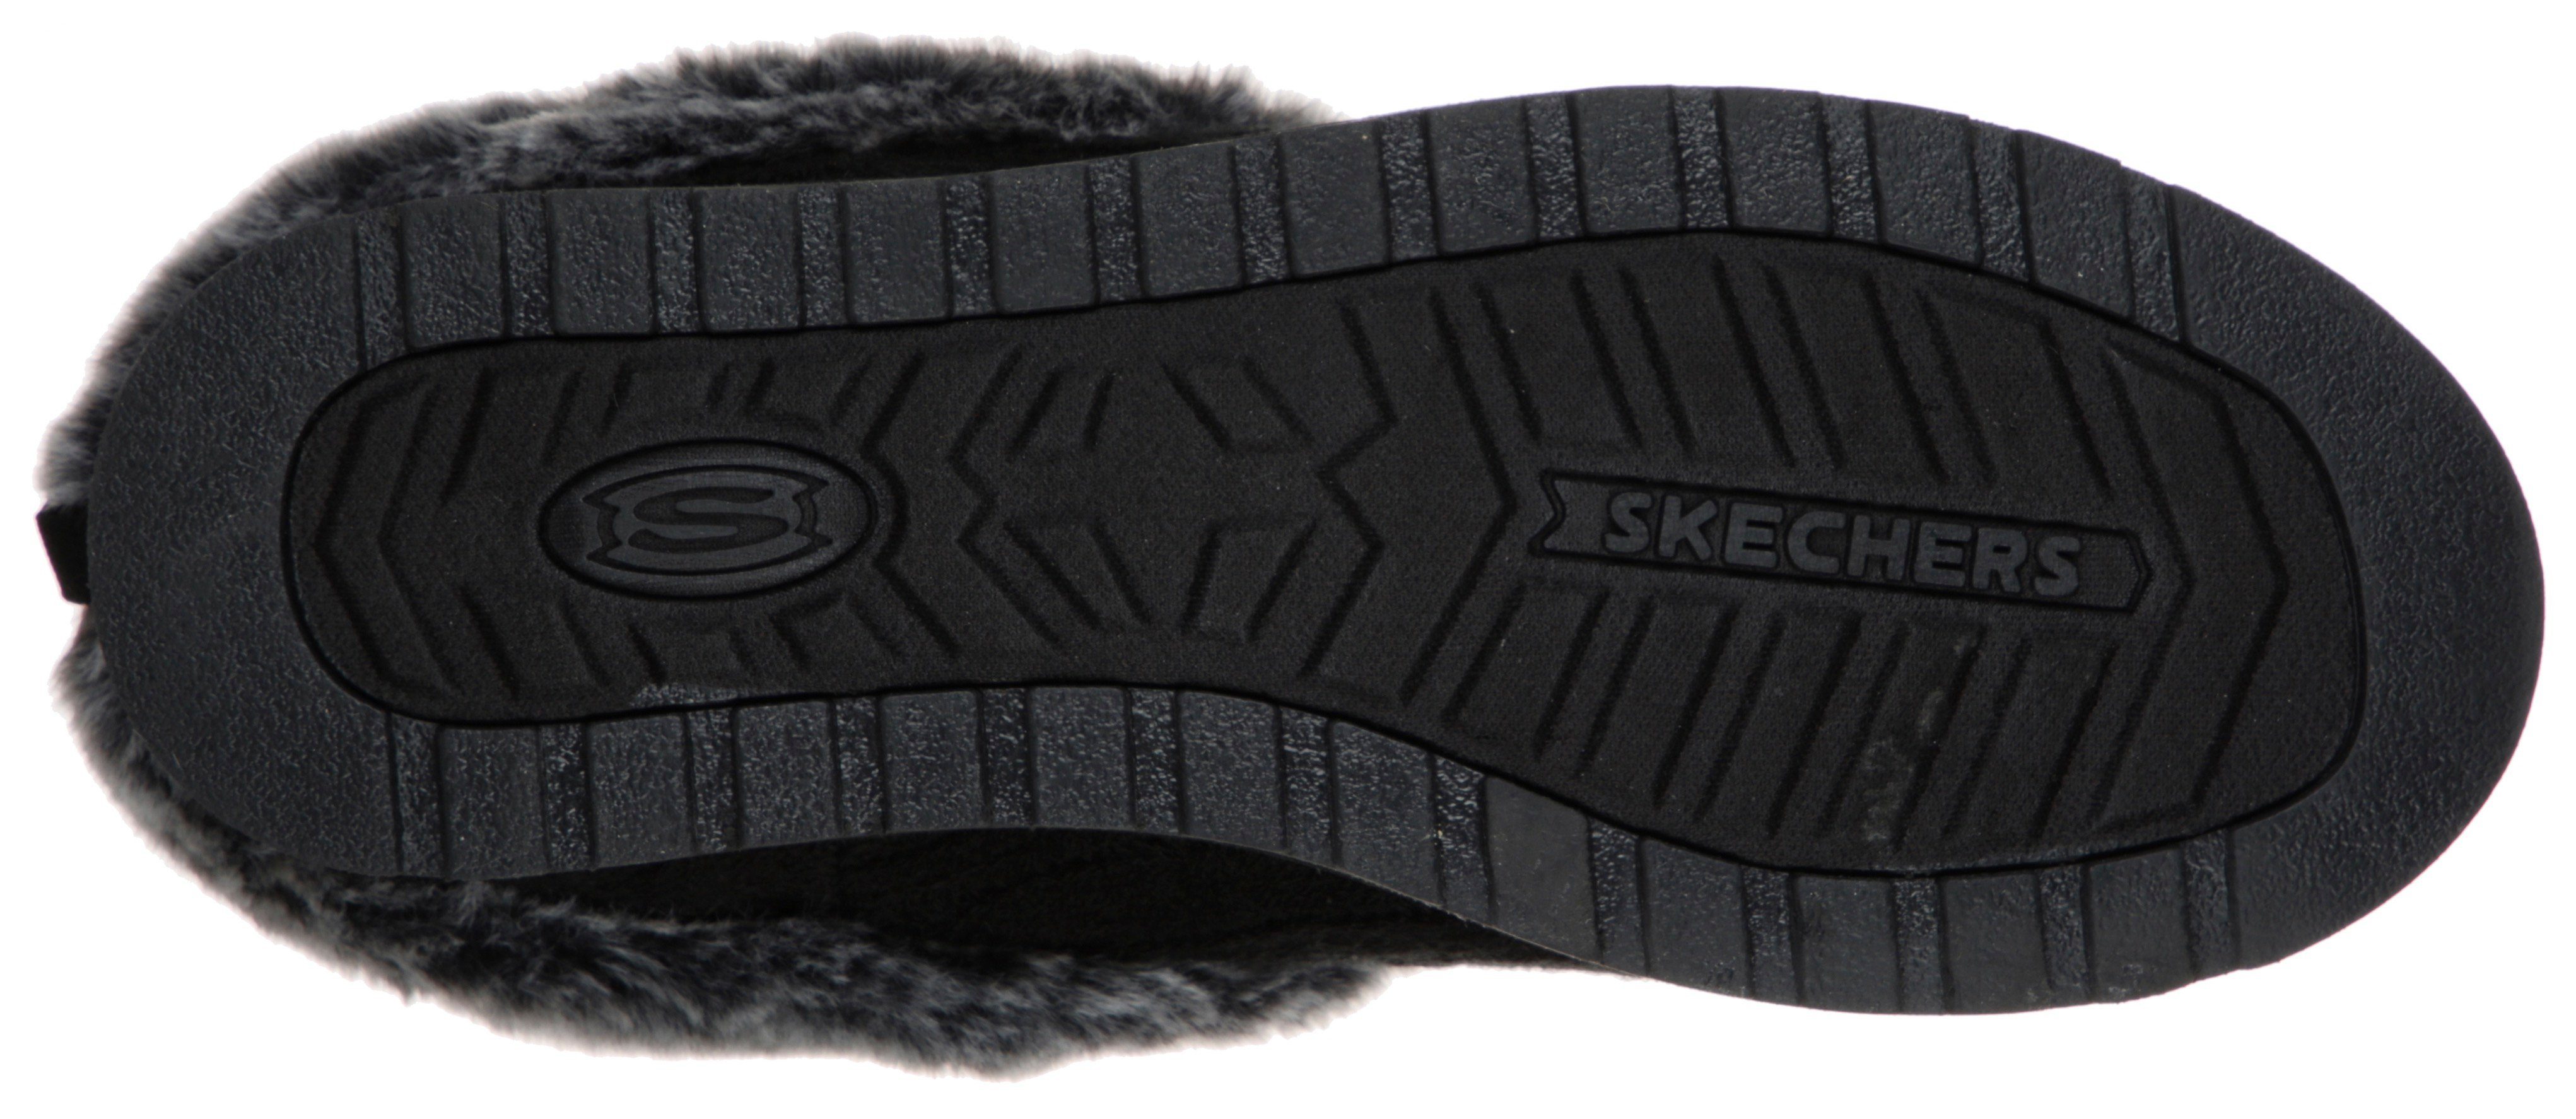 Skechers KEEPSAKES Strick-Optik ICE Pantoffel - schwarz-grau ANGEL in